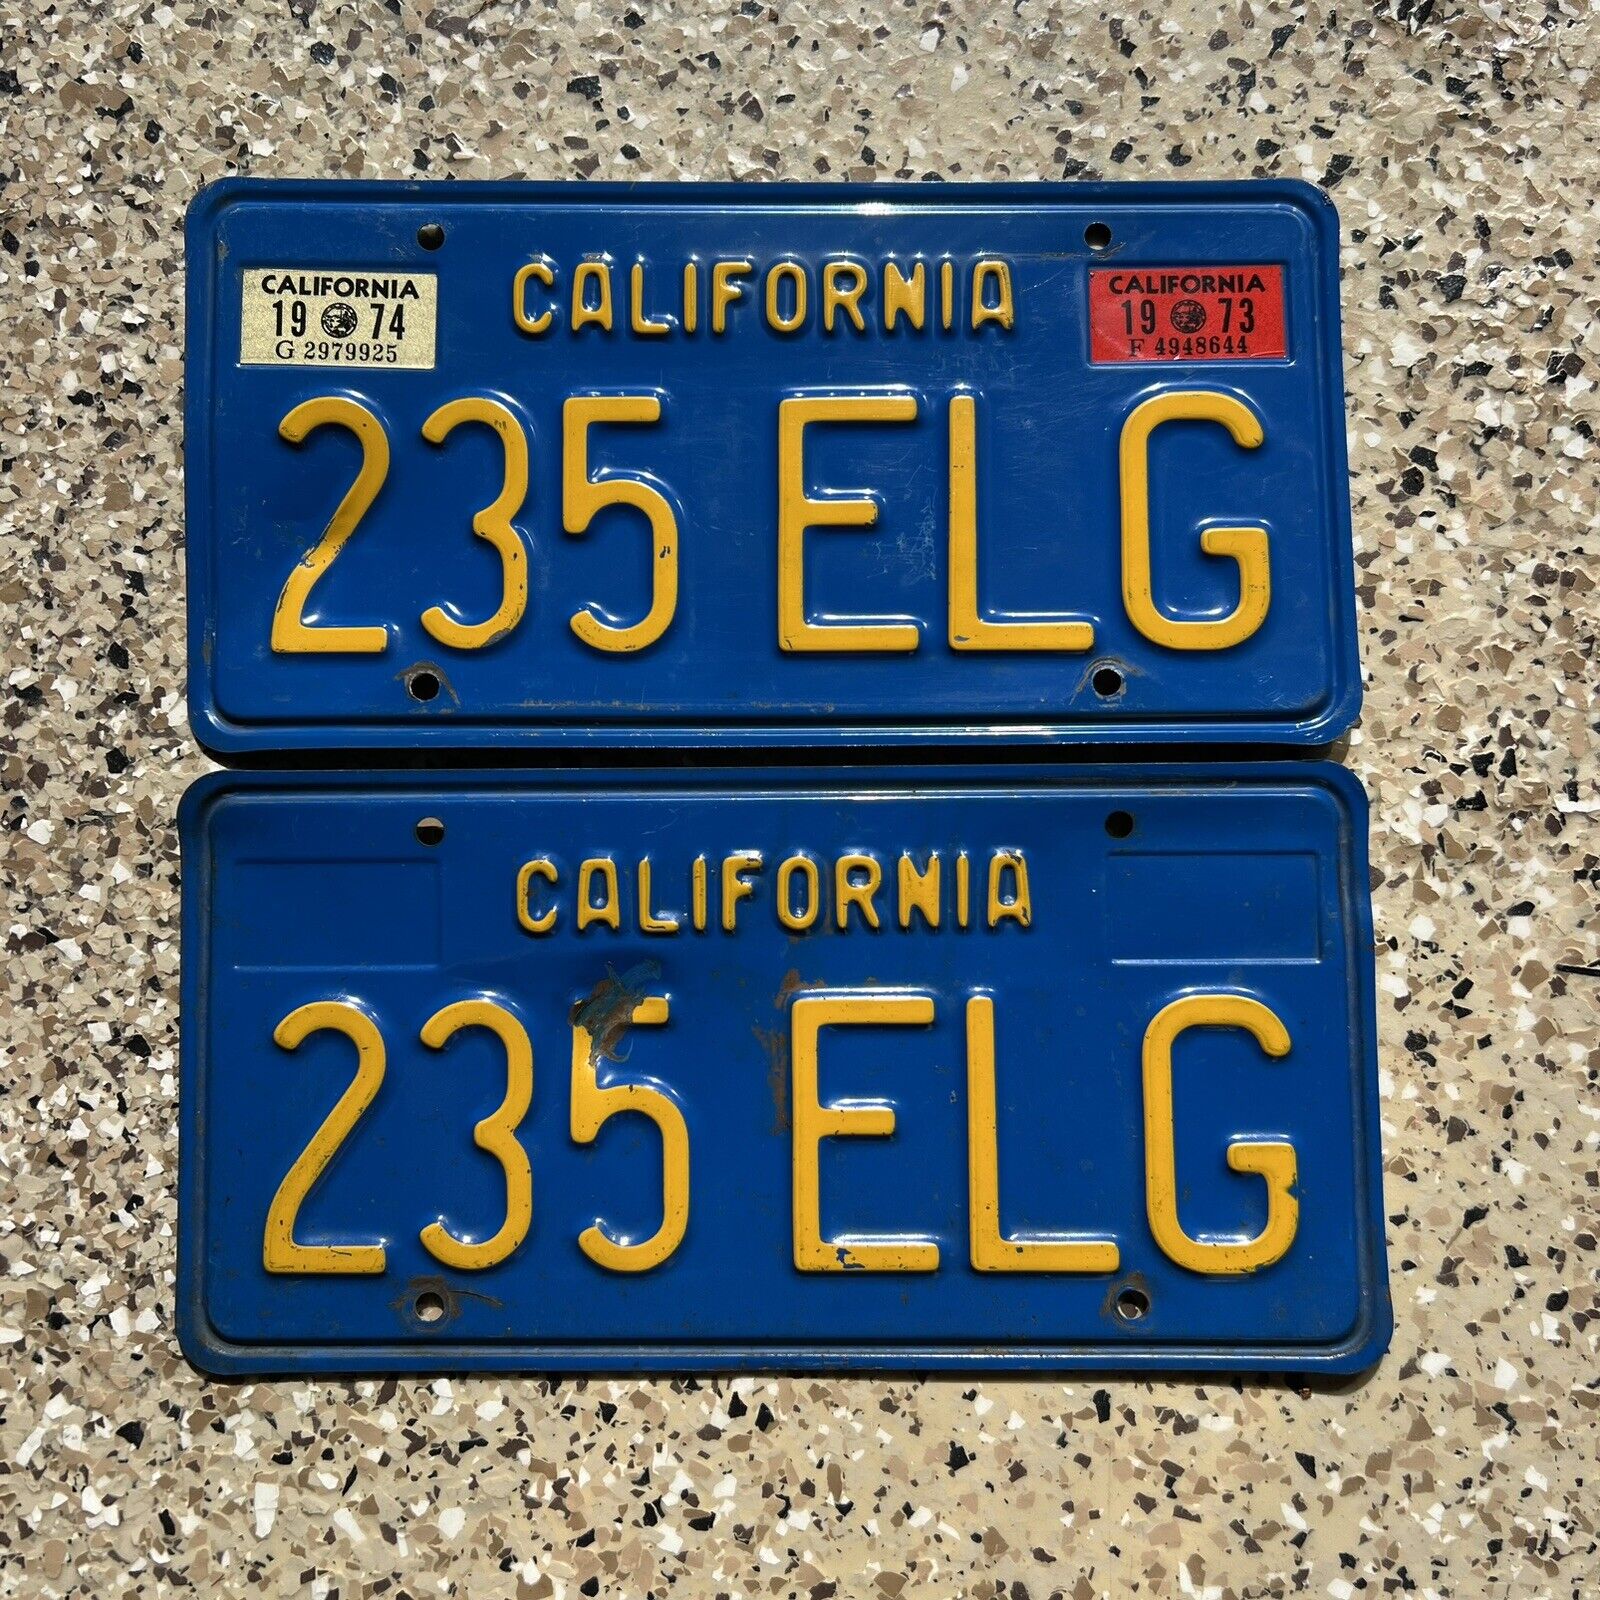 California 1970 Blue License Plate Pair DMV Clear 235 ELG 1973 1974 Sticker 70s